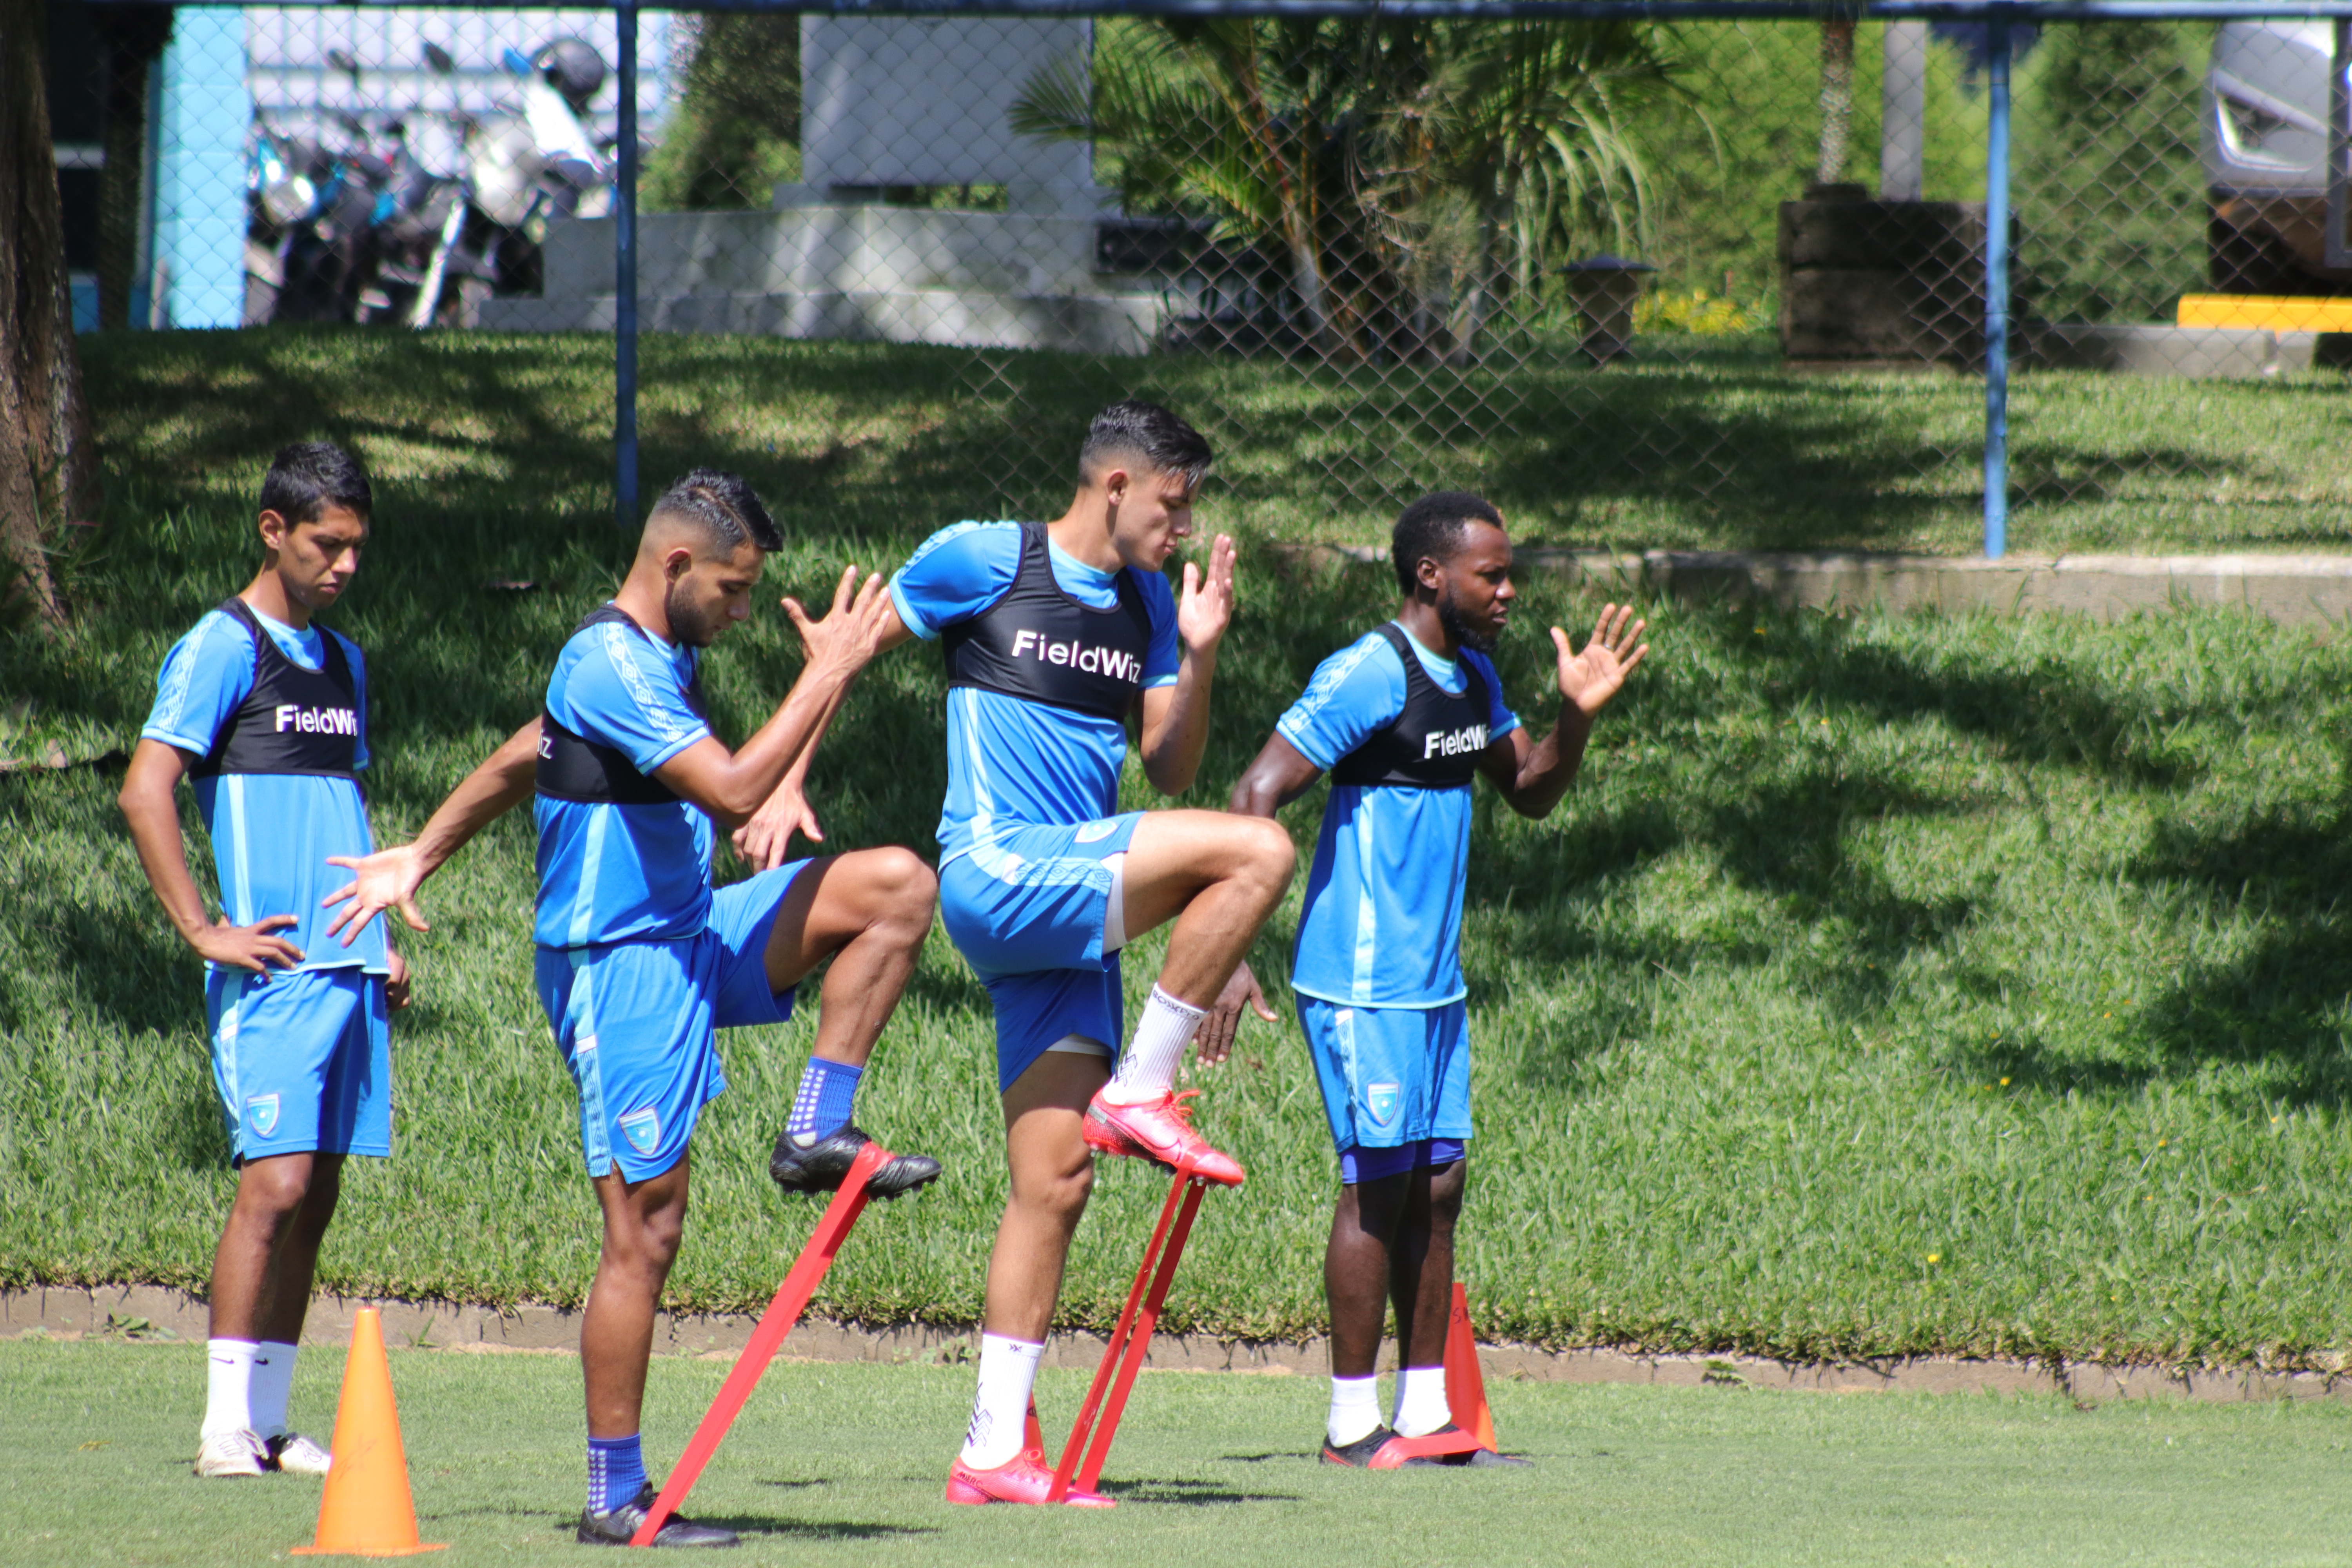 La Selección Nacional continúa su preparación para el juego ante El Salvador el próximo sábado 26 en Los Ángeles, California, Estados Unidos. Foto Prensa Libre: Fedefut